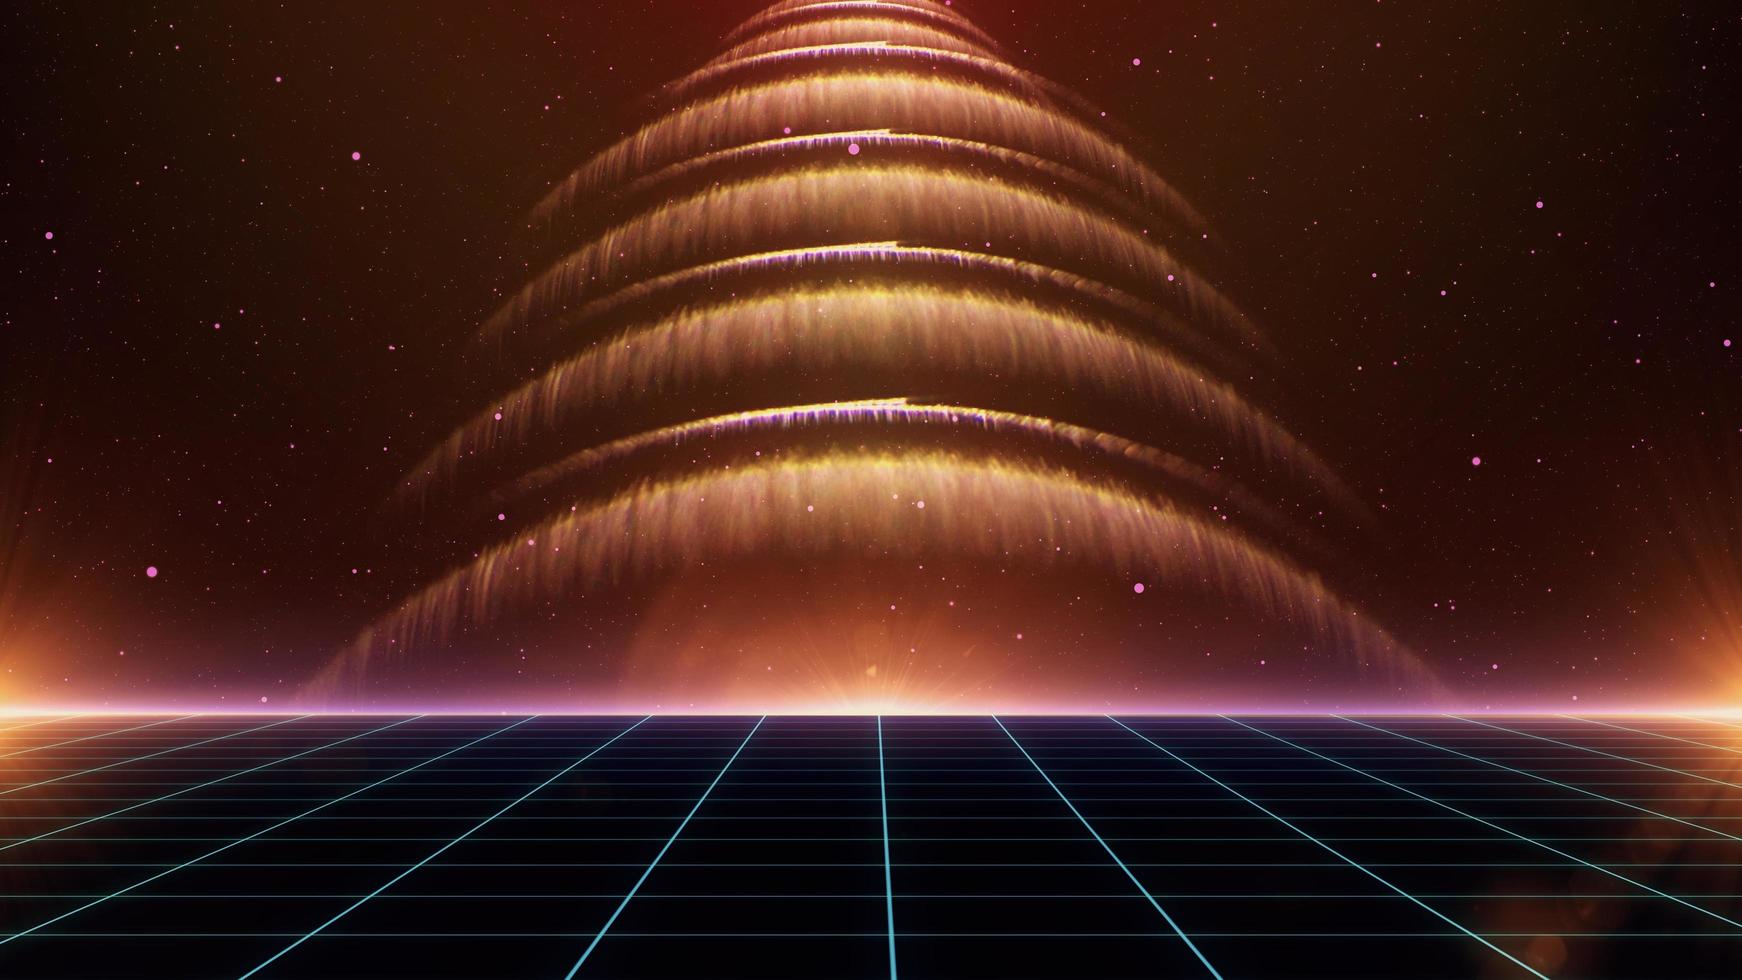 fundo de ficção científica dos anos 80 estilo retro futurista com paisagem de grade de laser. estilo de superfície cibernética digital da década de 1980. foto